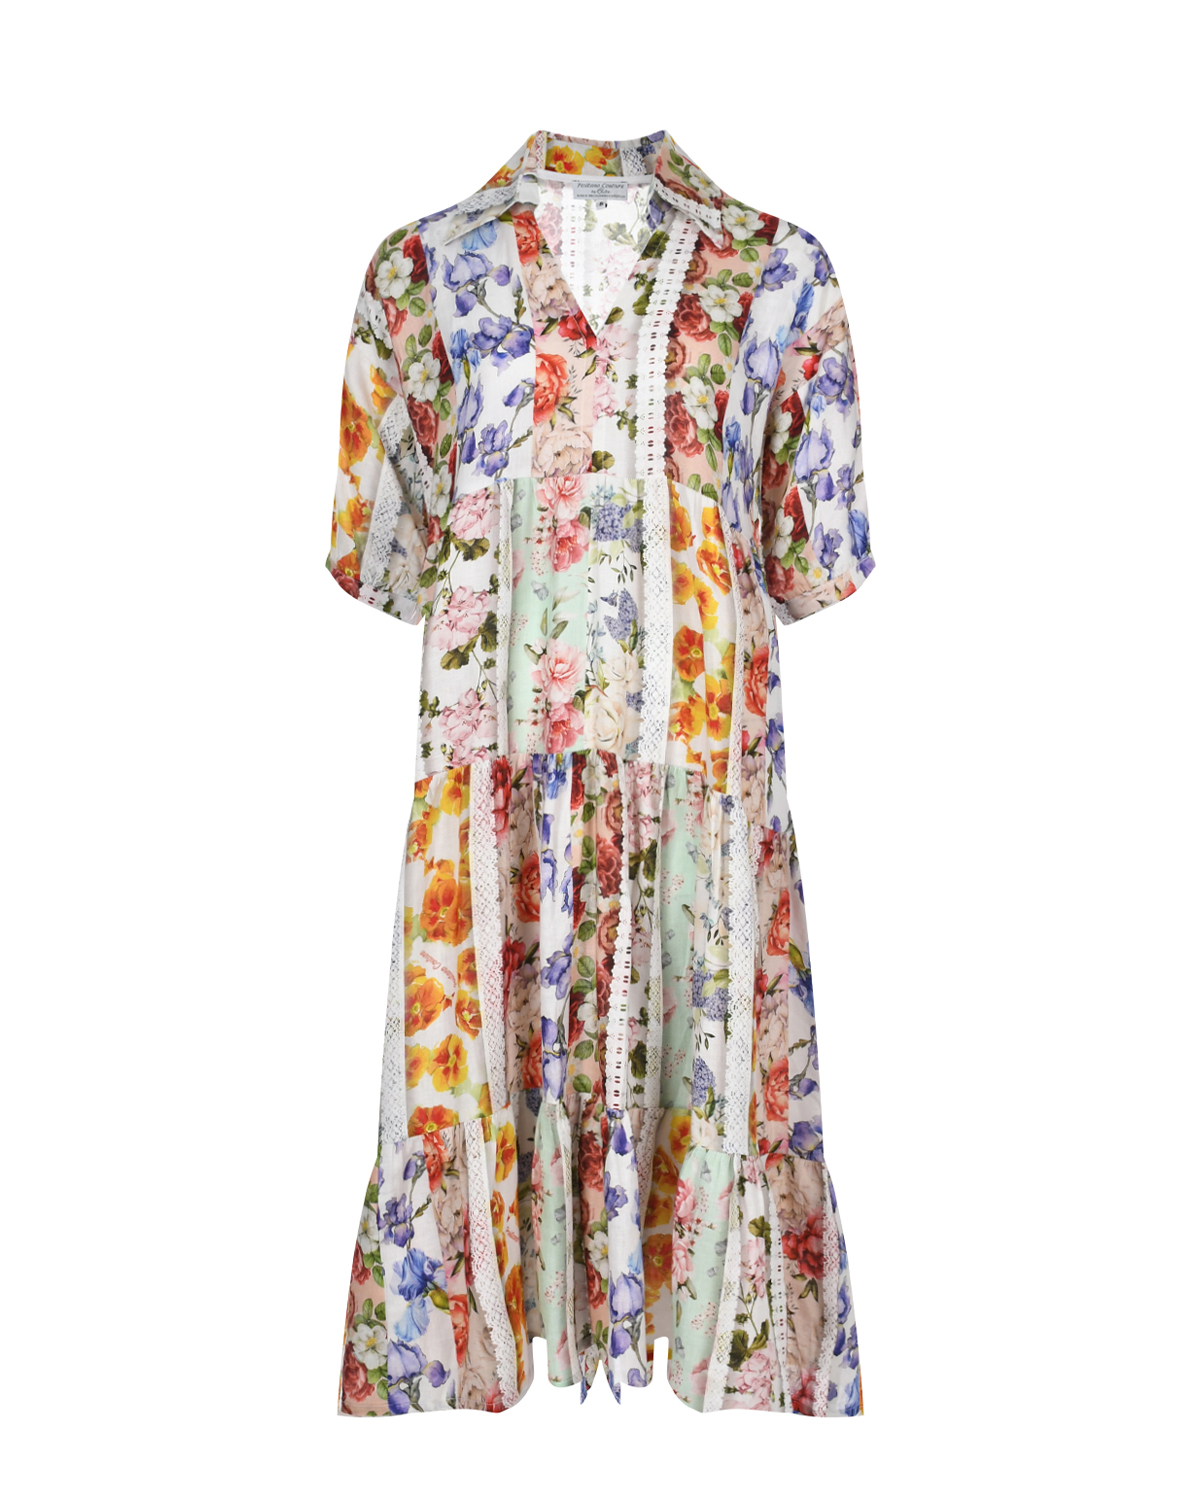 Платье льняное миди со сплошным цветочным принтом Positano Couture, размер 40 - фото 1